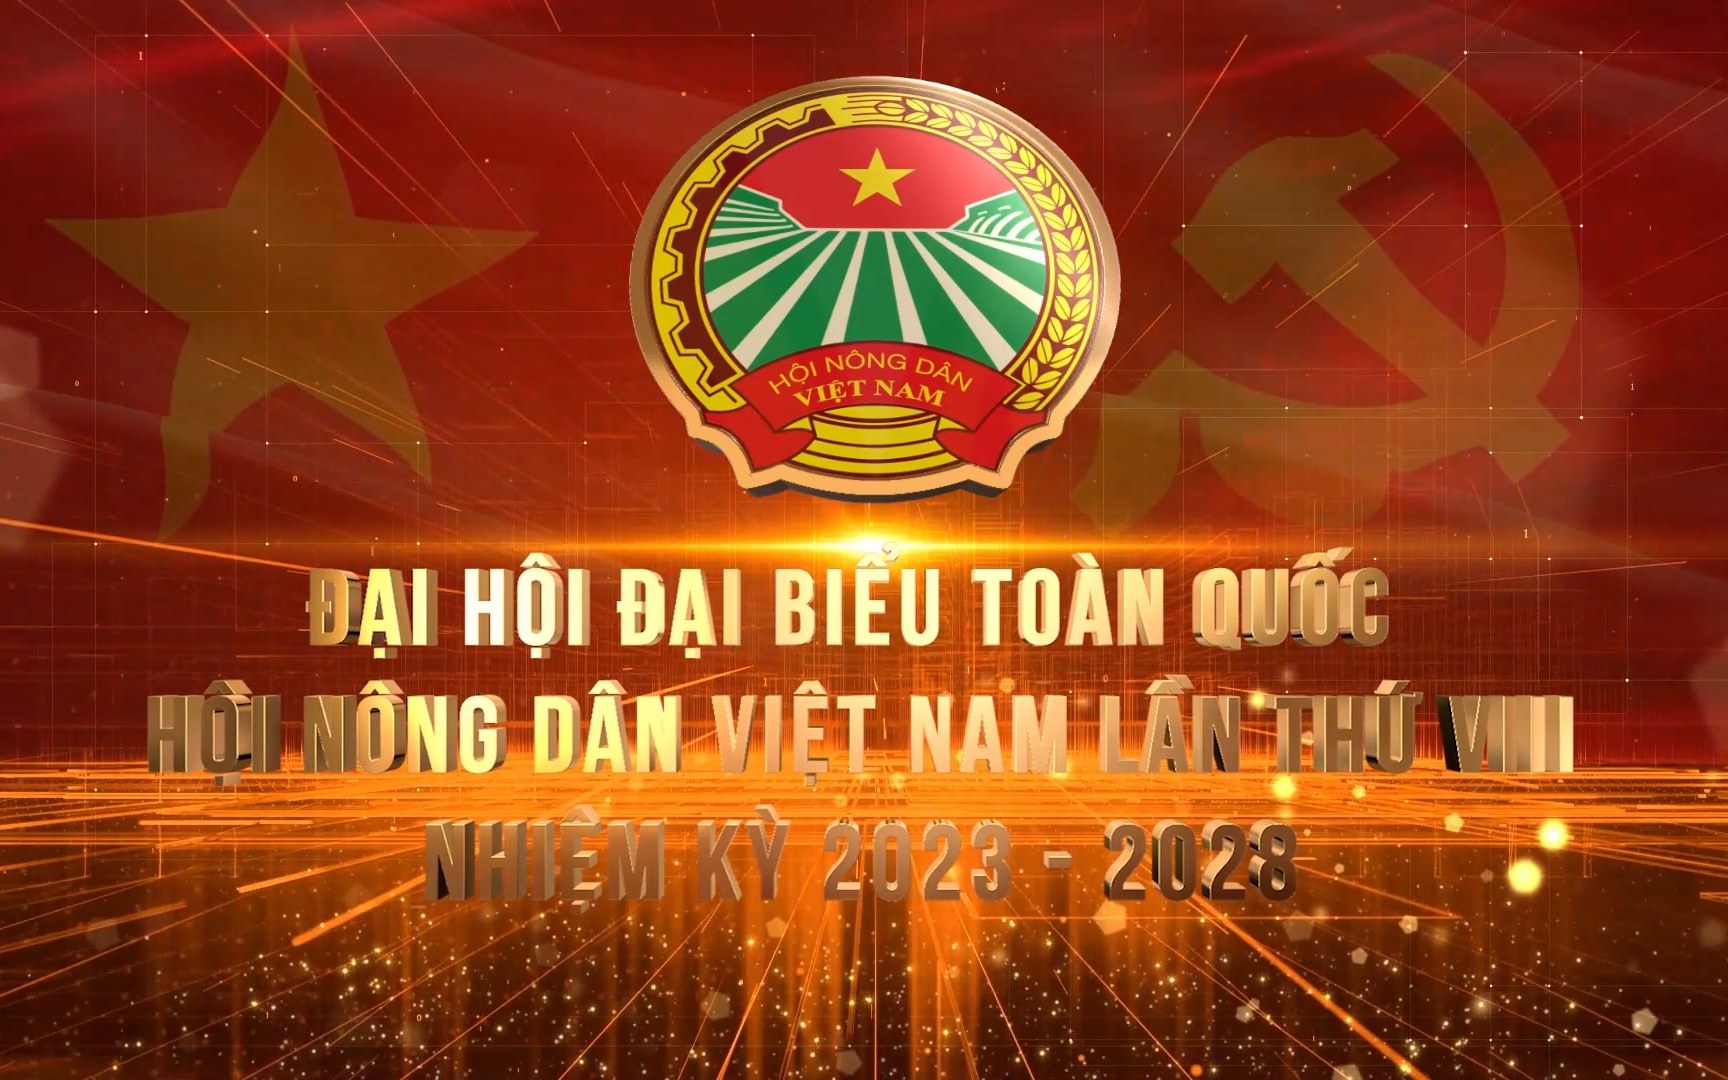 ĐẠI HỘI HỘI NÔNG DÂN VIỆT NAM LẦN VIII: Hội Nông dân huyện Văn Yên náo nức nhận cờ thi đua